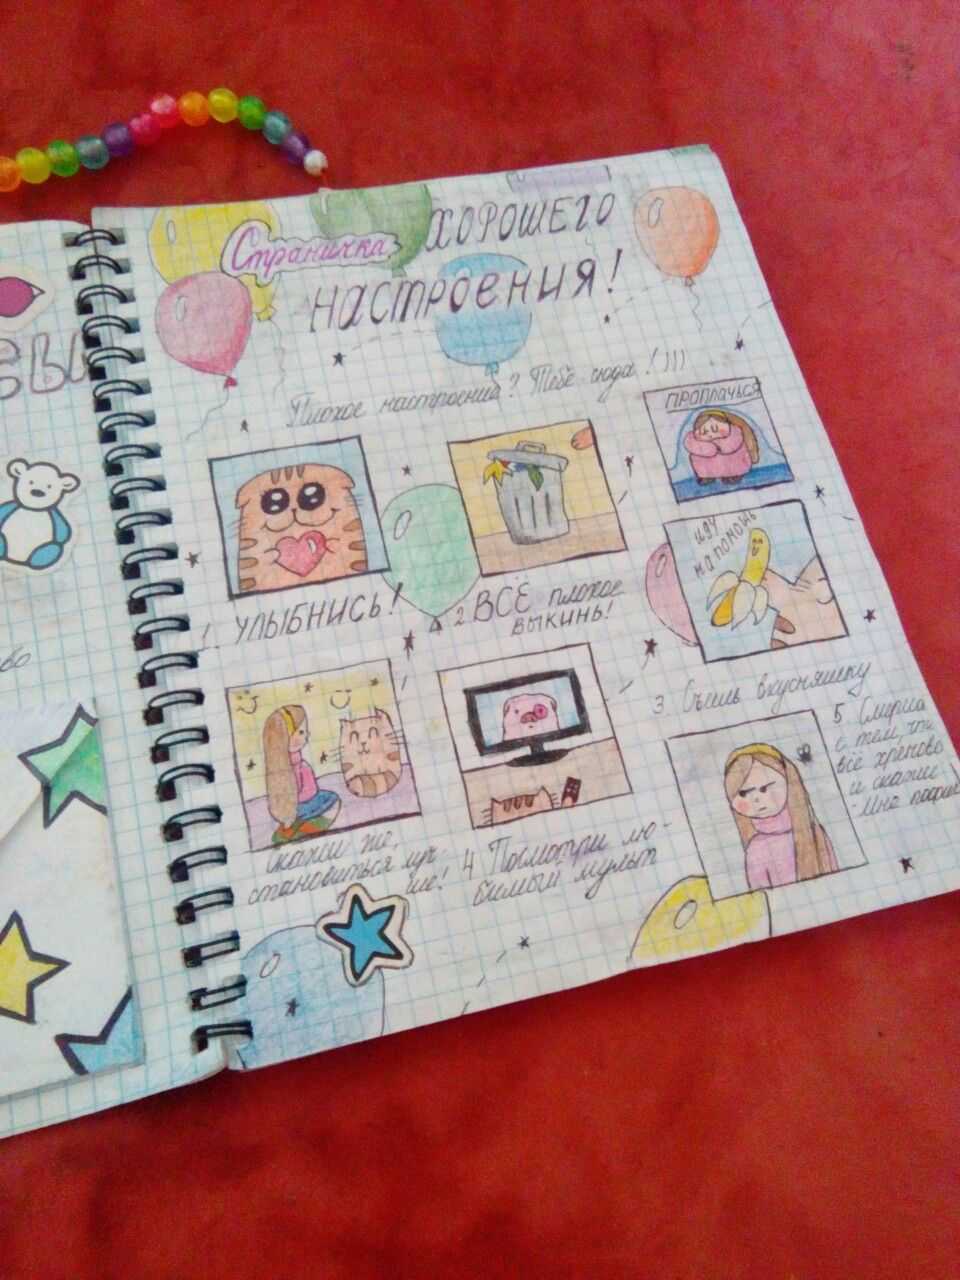 Новые и лучшие идеи для личного дневника для девочек своими руками. лучшие идеи для оформления первой страницы личного дневника, рисунки и картинки для срисовки, стихи, темы, любовь